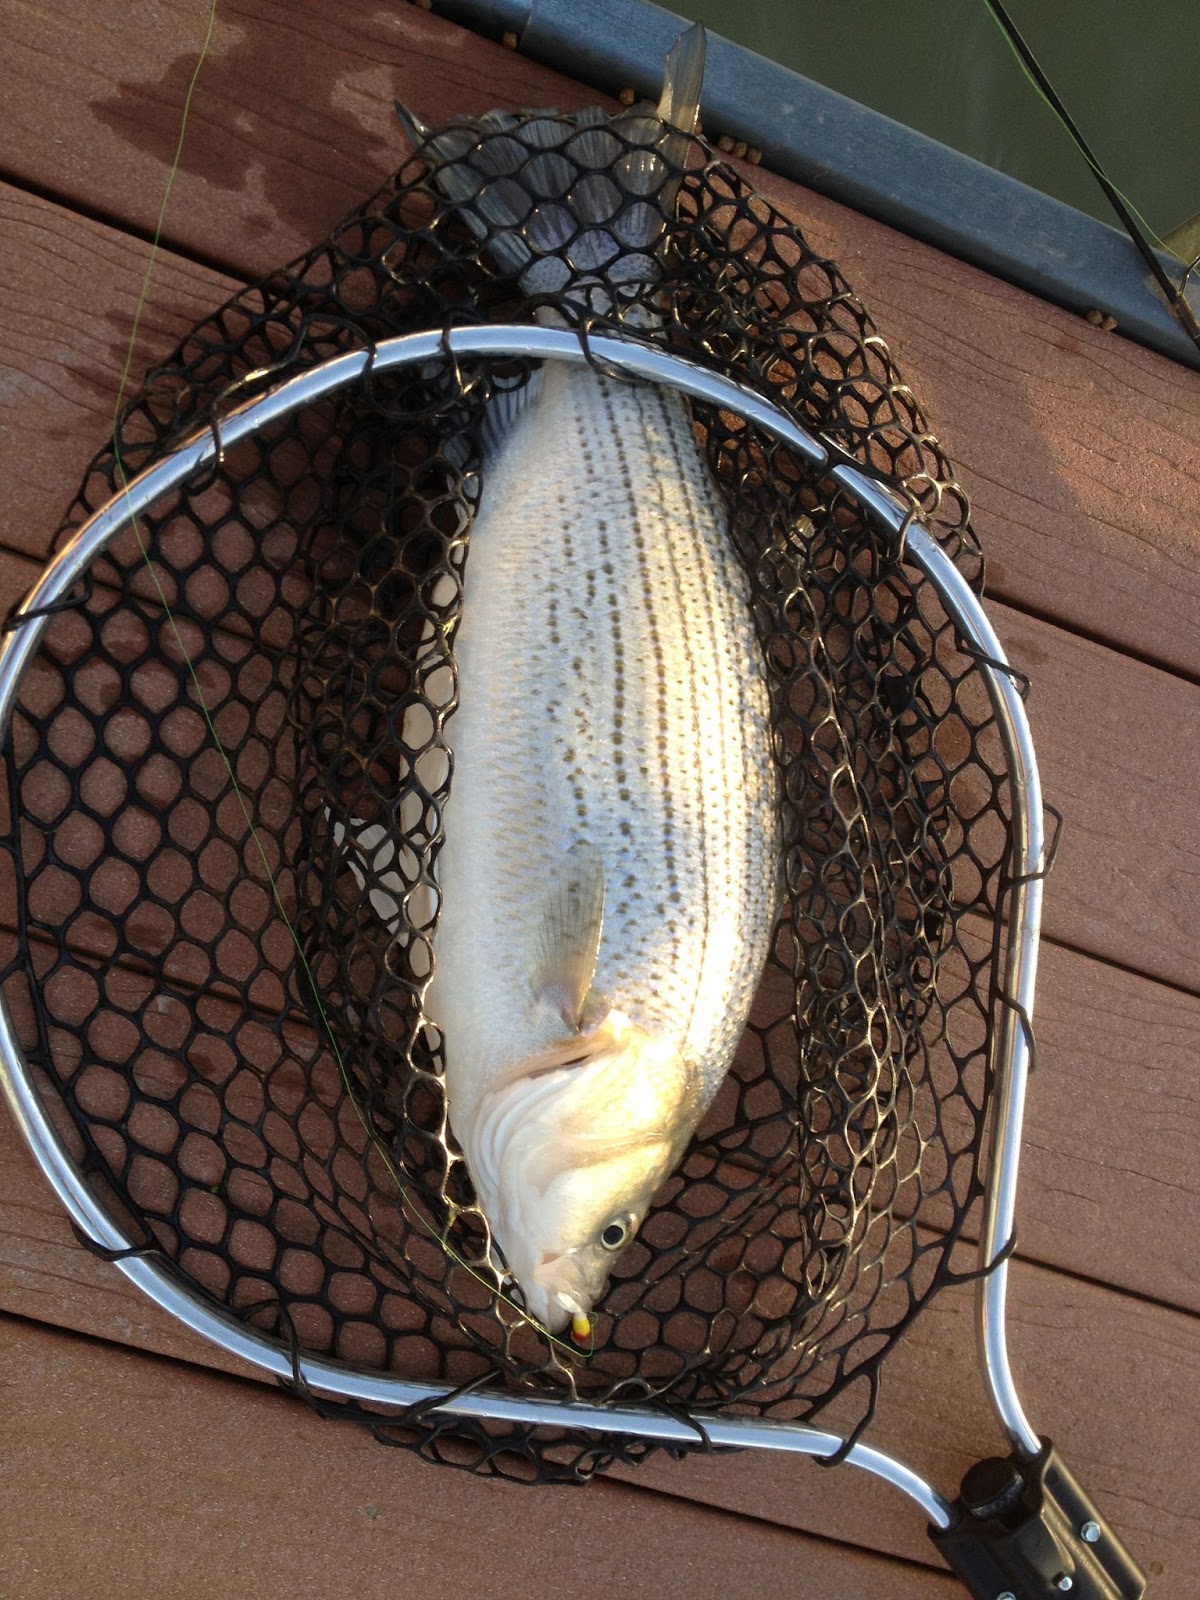 hybrid striped bass in net